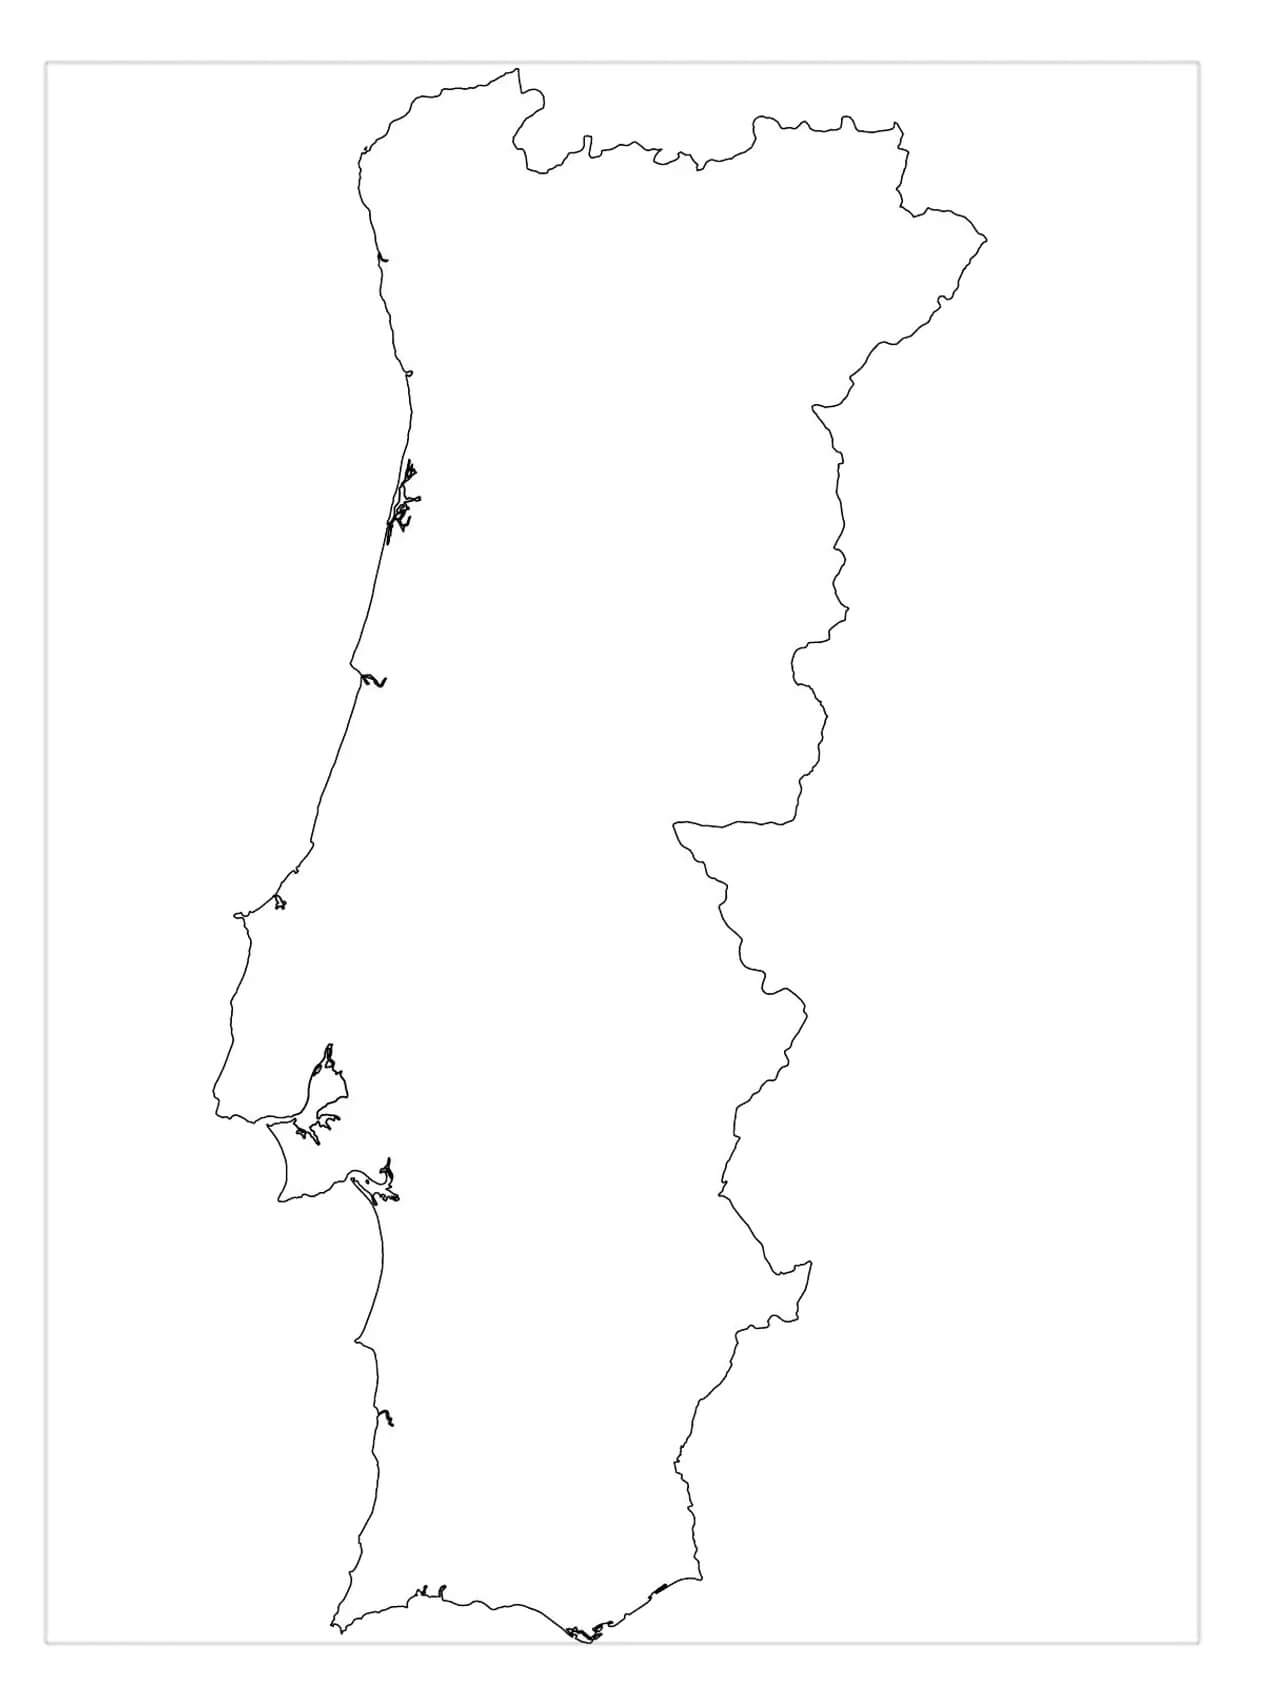 Mapa em Branco de Portugal para colorir